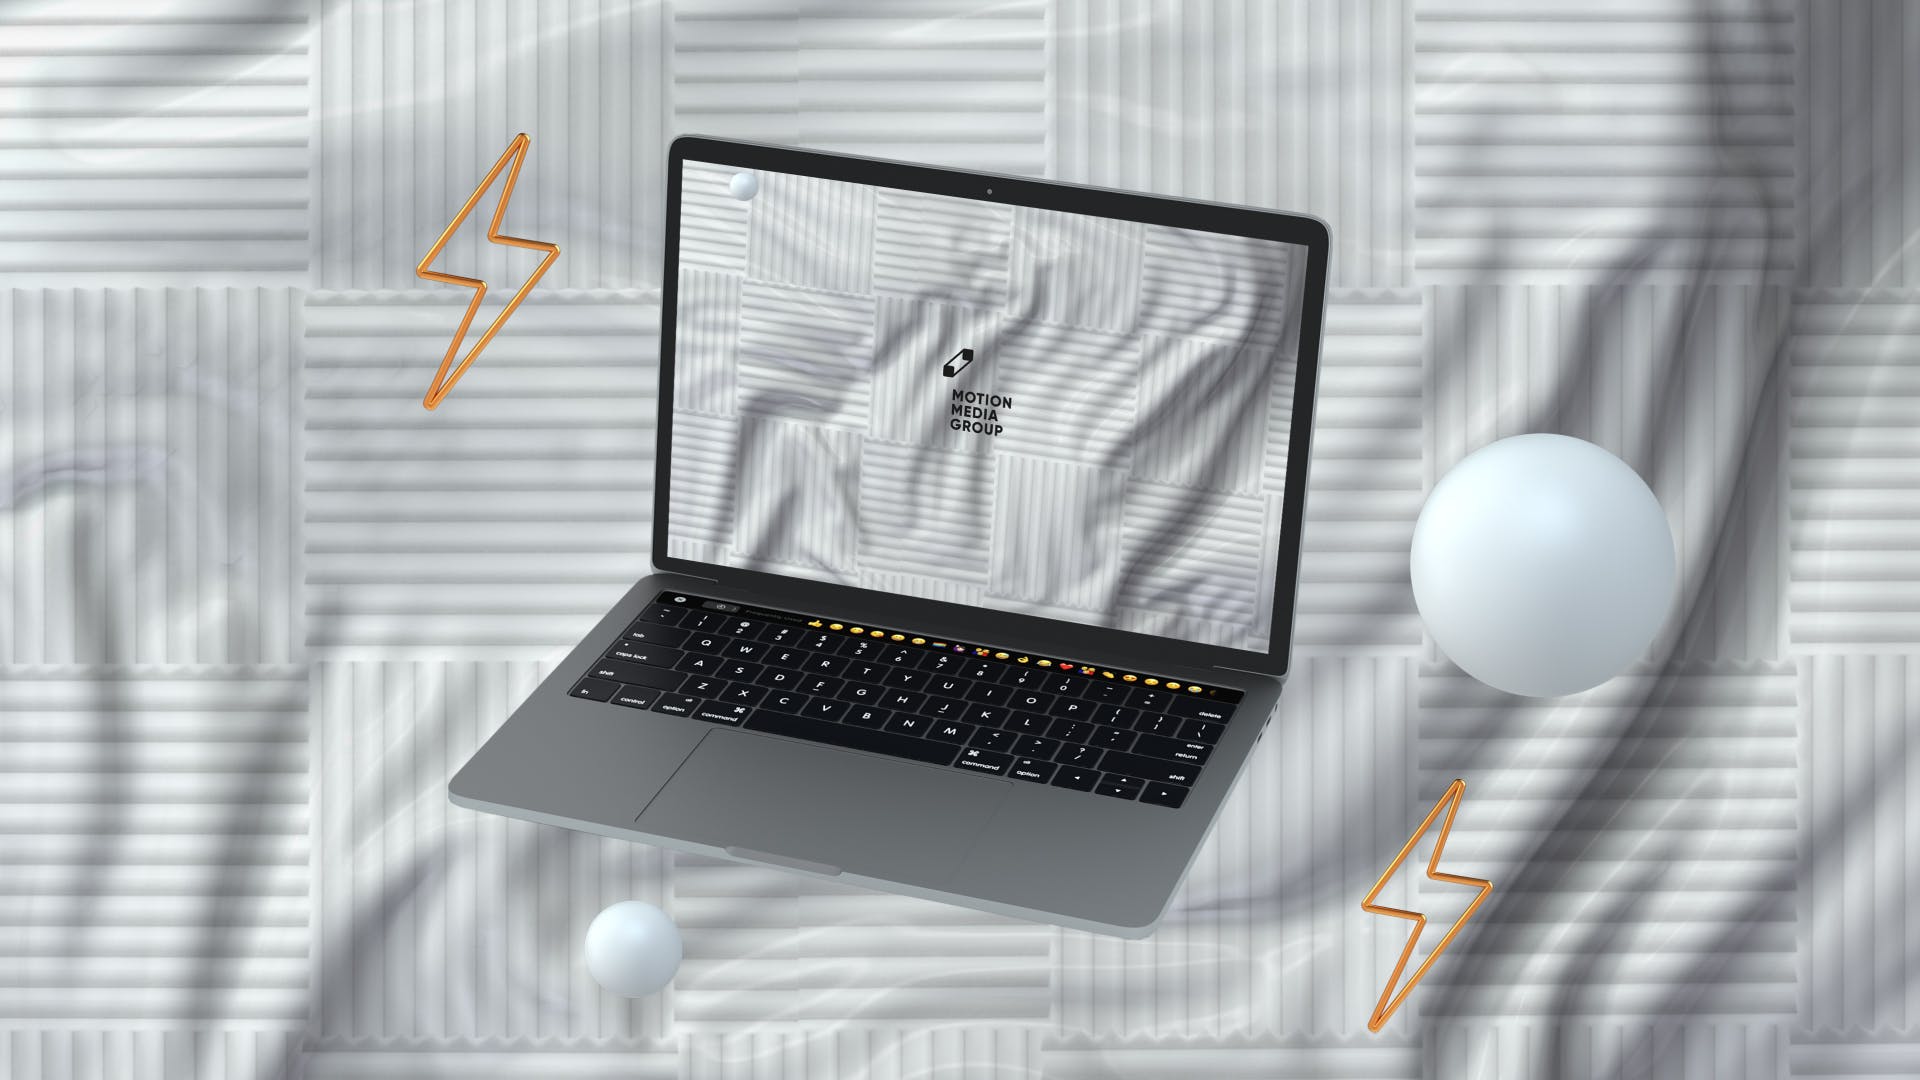 优雅时尚风格3D立体风格笔记本电脑屏幕预览素材库精选样机 10 Light Laptop Mockups插图(5)